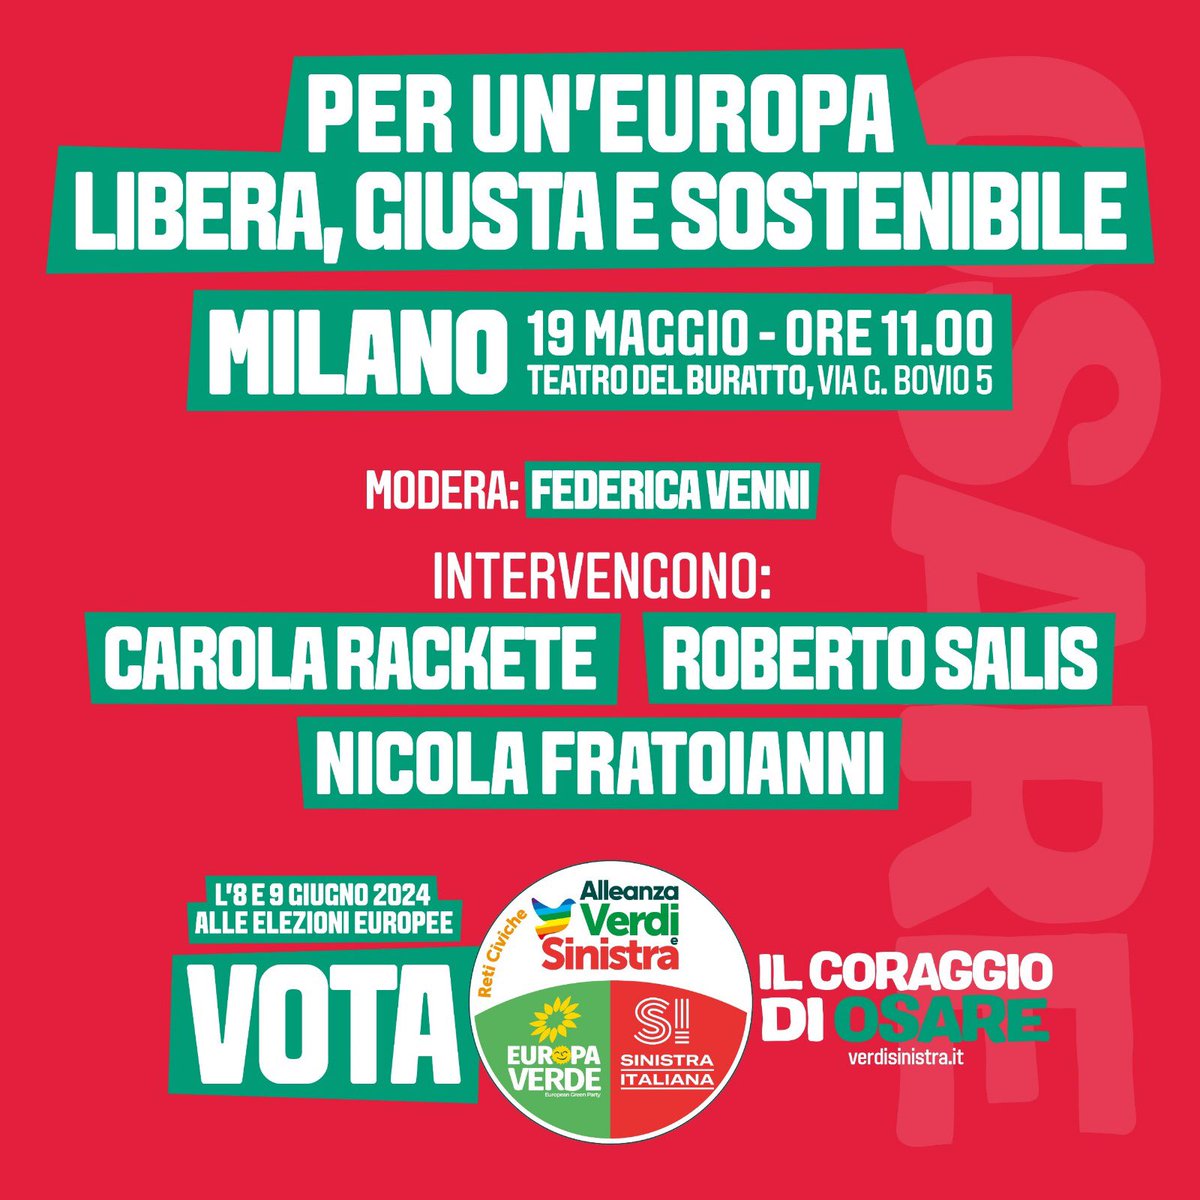 Per un’Europa libera, giusta e sostenibile. A #Milano domenica #19maggio ore 11 al Teatro del Buratto. Con #CarolaRackete, Roberto Salis e Nicola Fratoianni. #Europee #IlariaSalis #AlleanzaVerdiSinistra